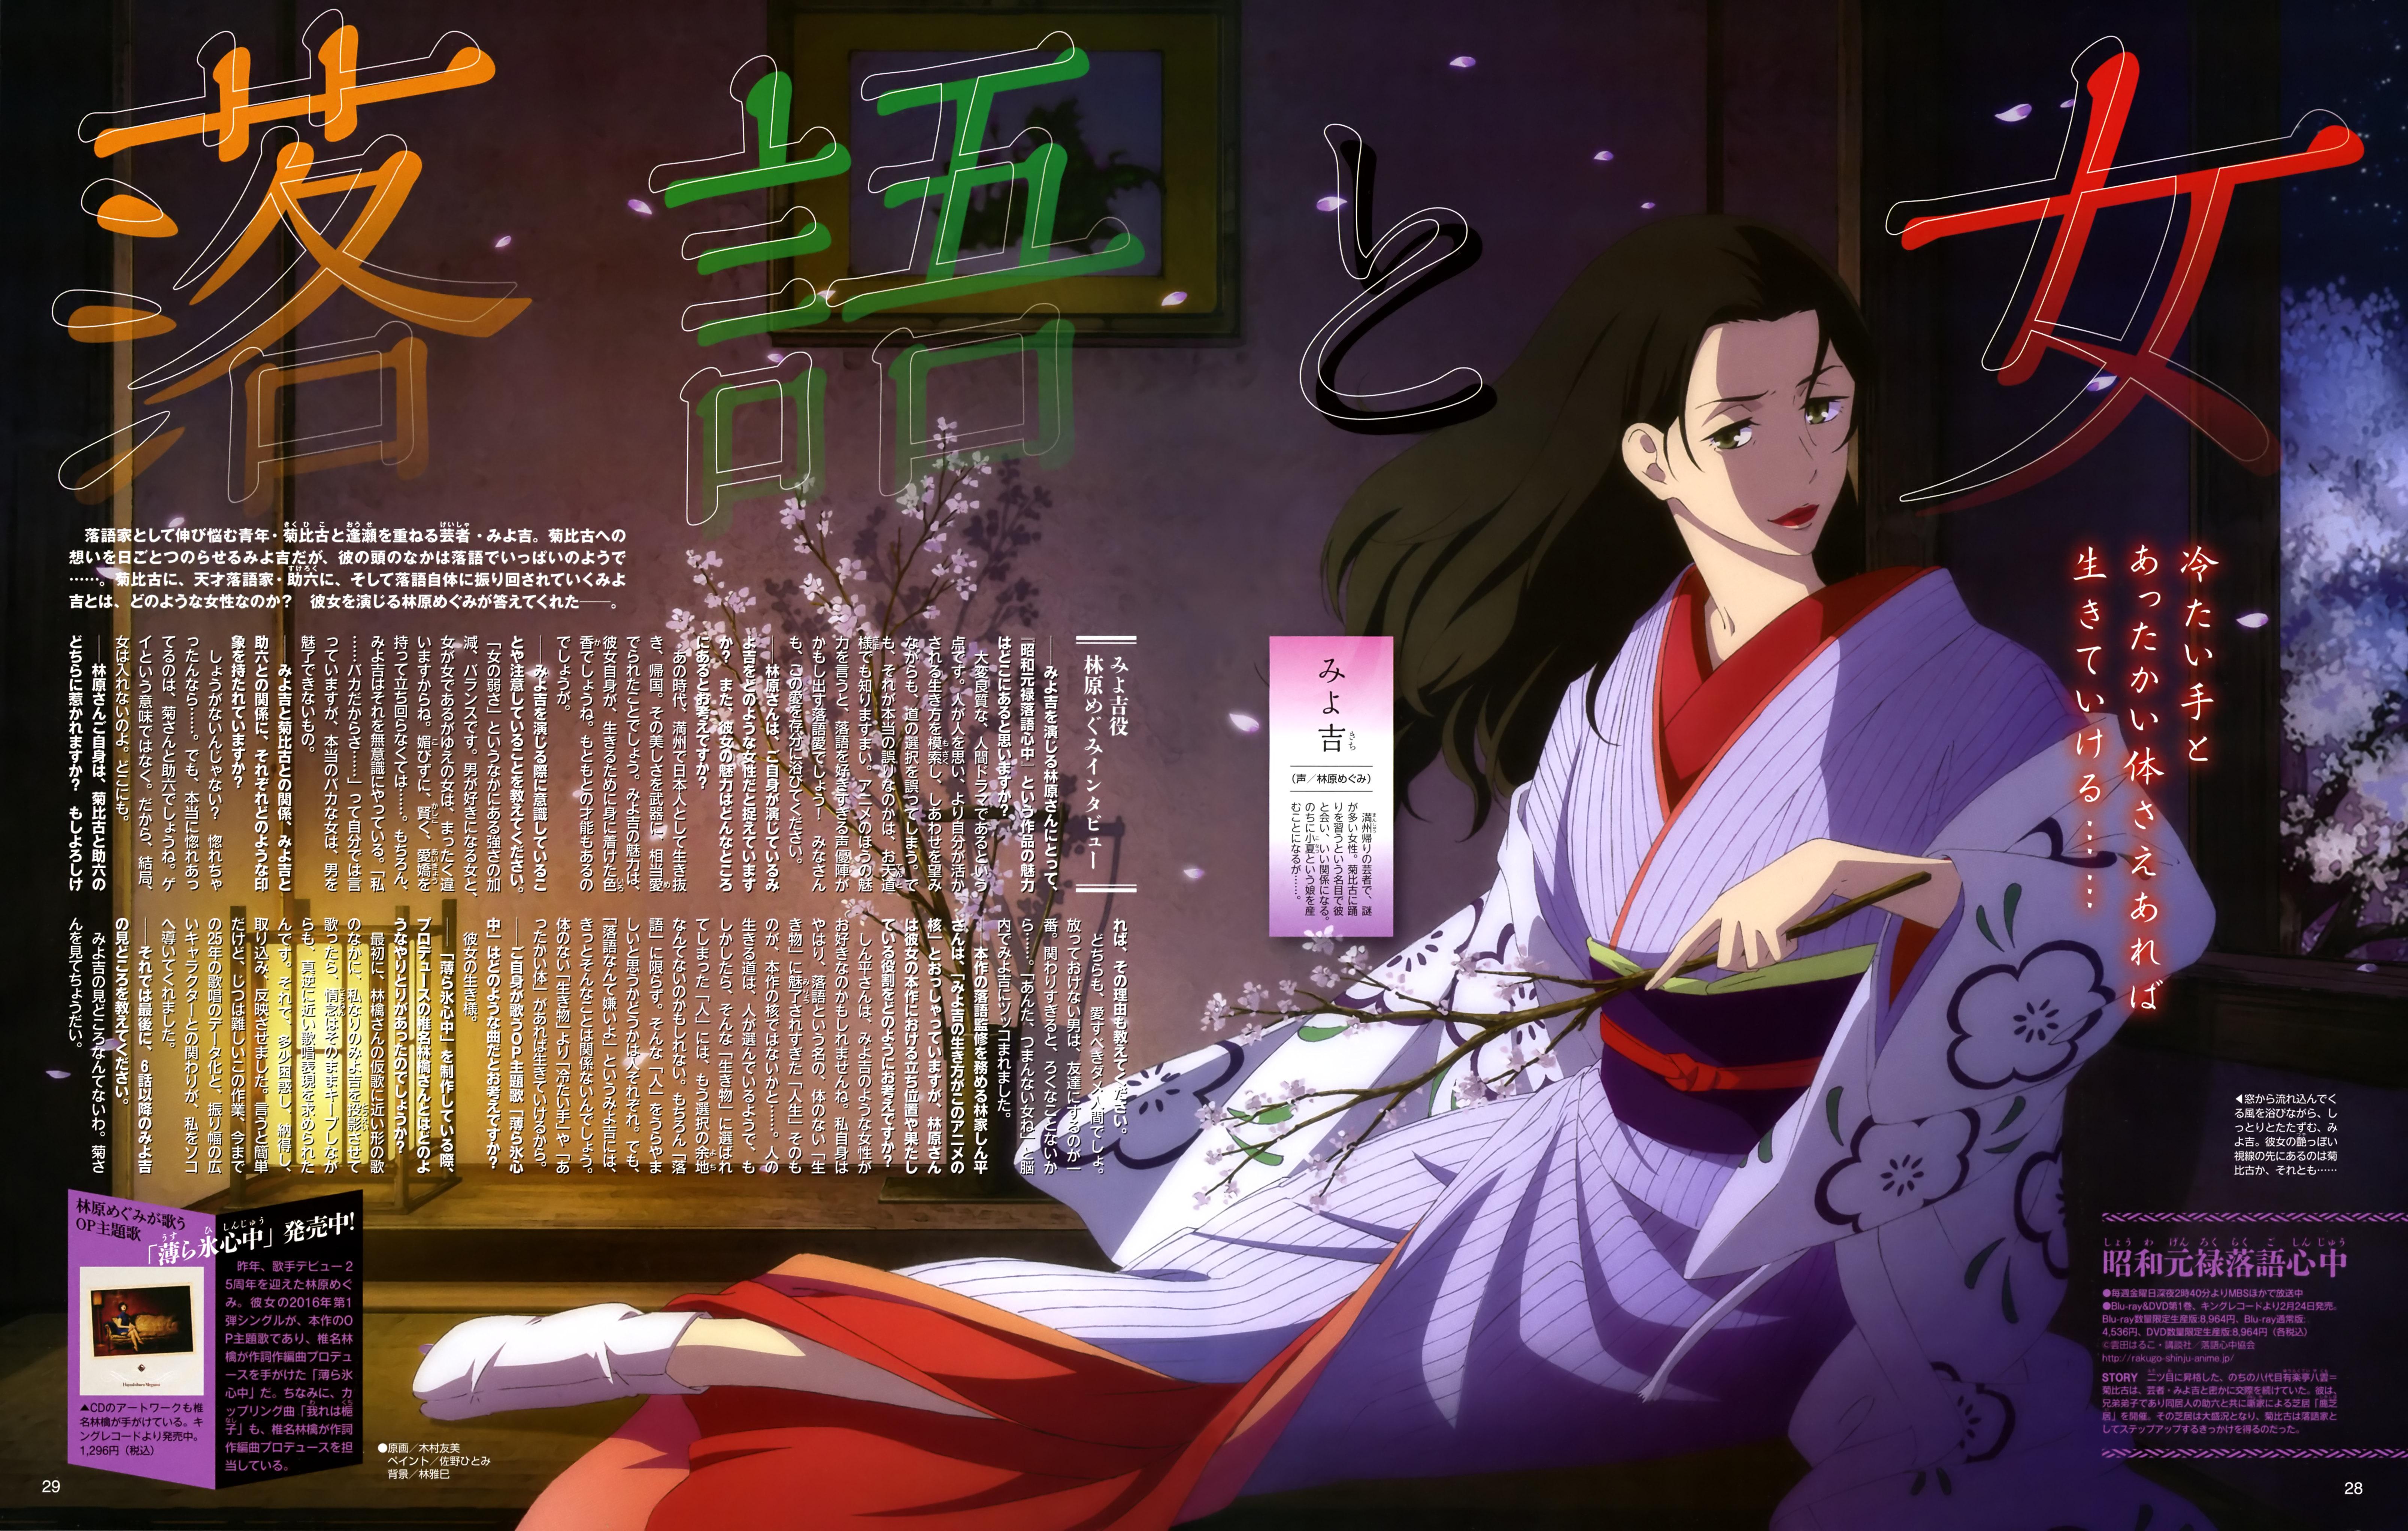 Descending Stories: Showa Genroku Rakugo Shinju Wallpapers